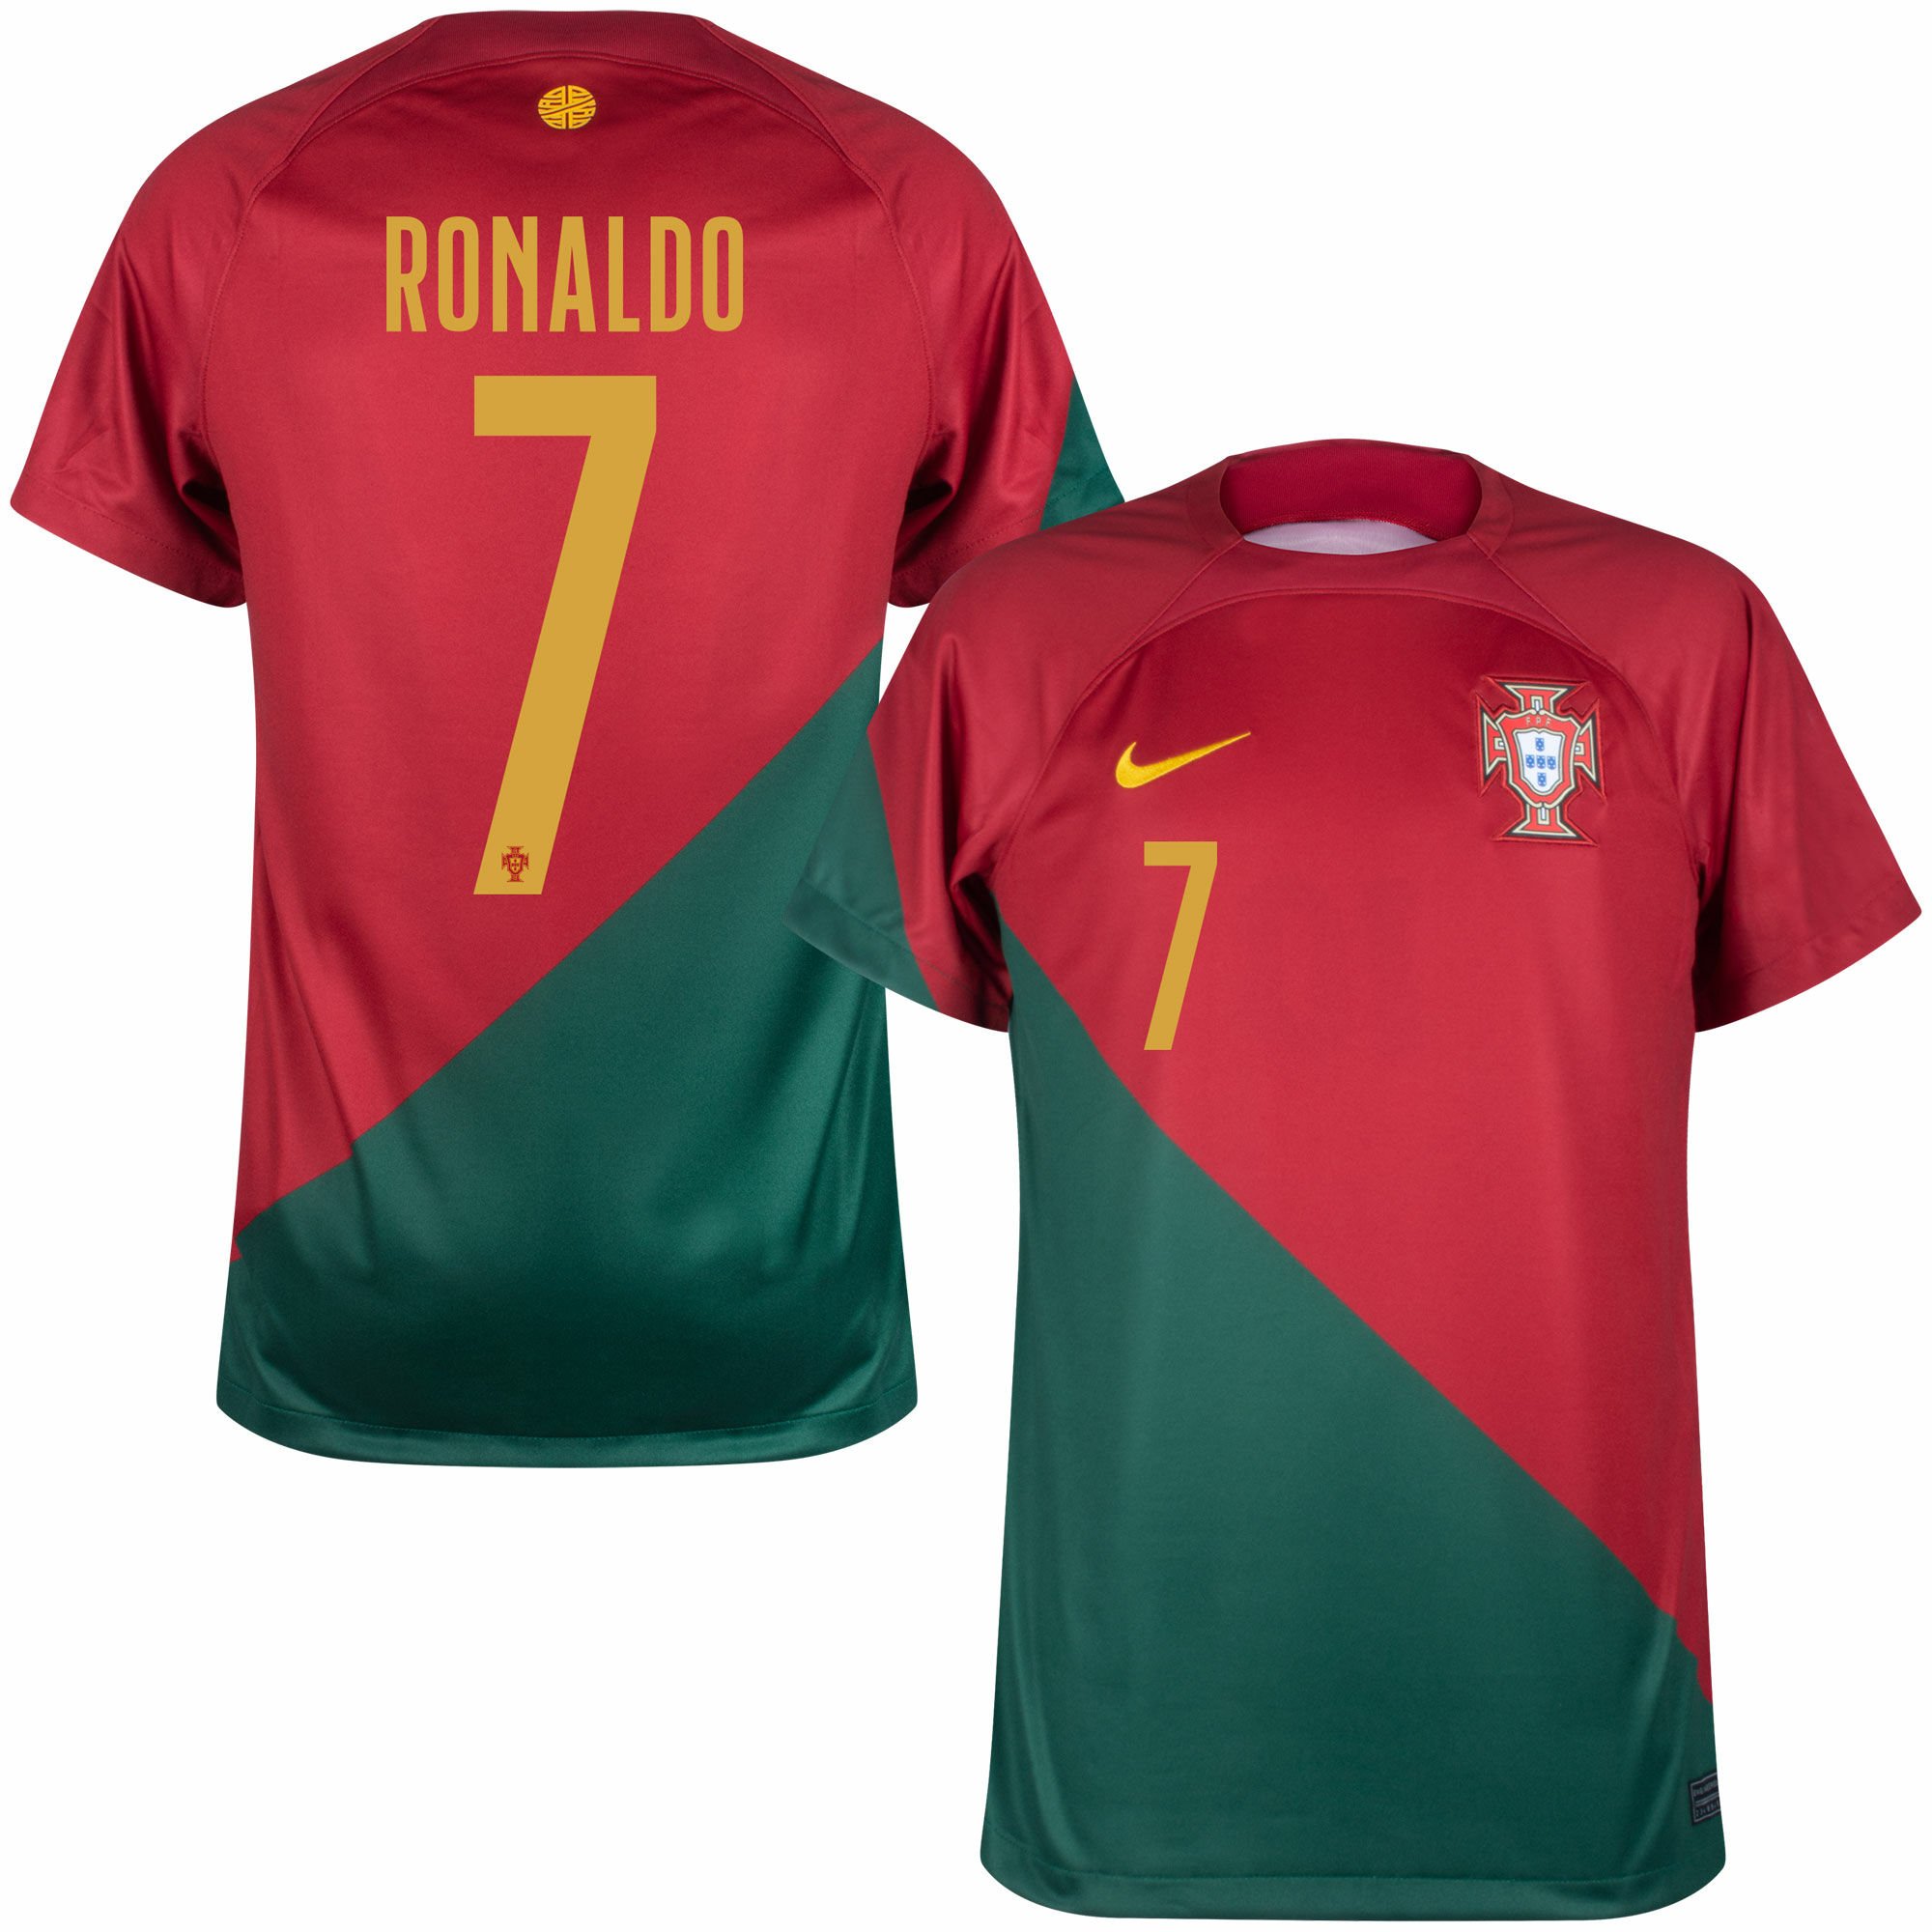 cristiano ronaldo portugal jersey